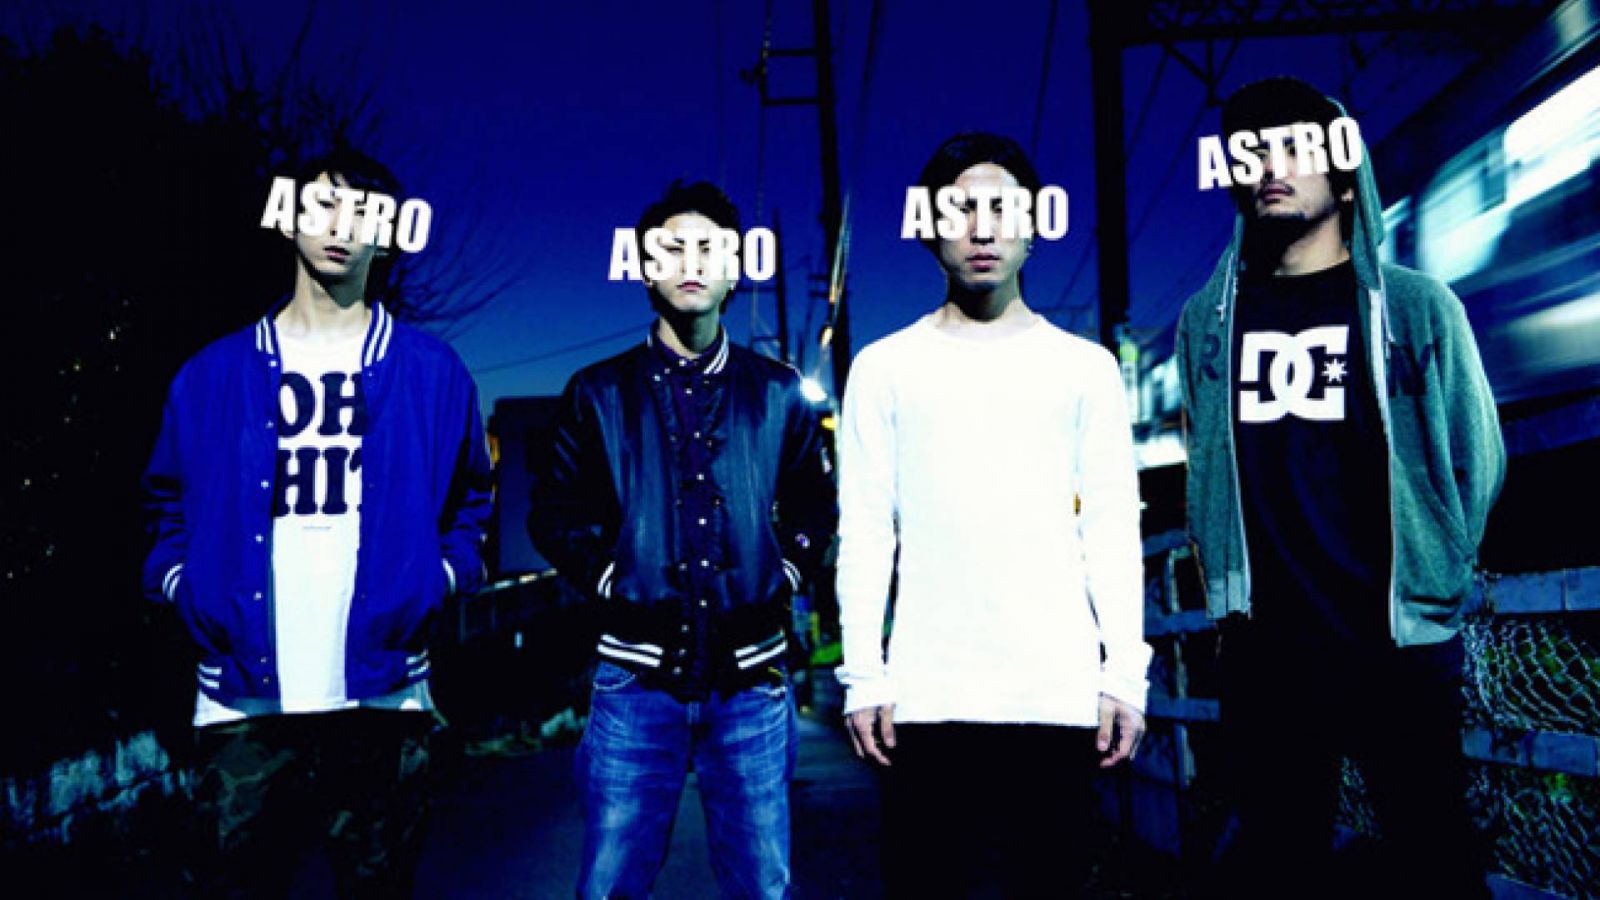 Radical Radion jäsenet perustivat uuden bändin © ASTRO. All rights reserved.